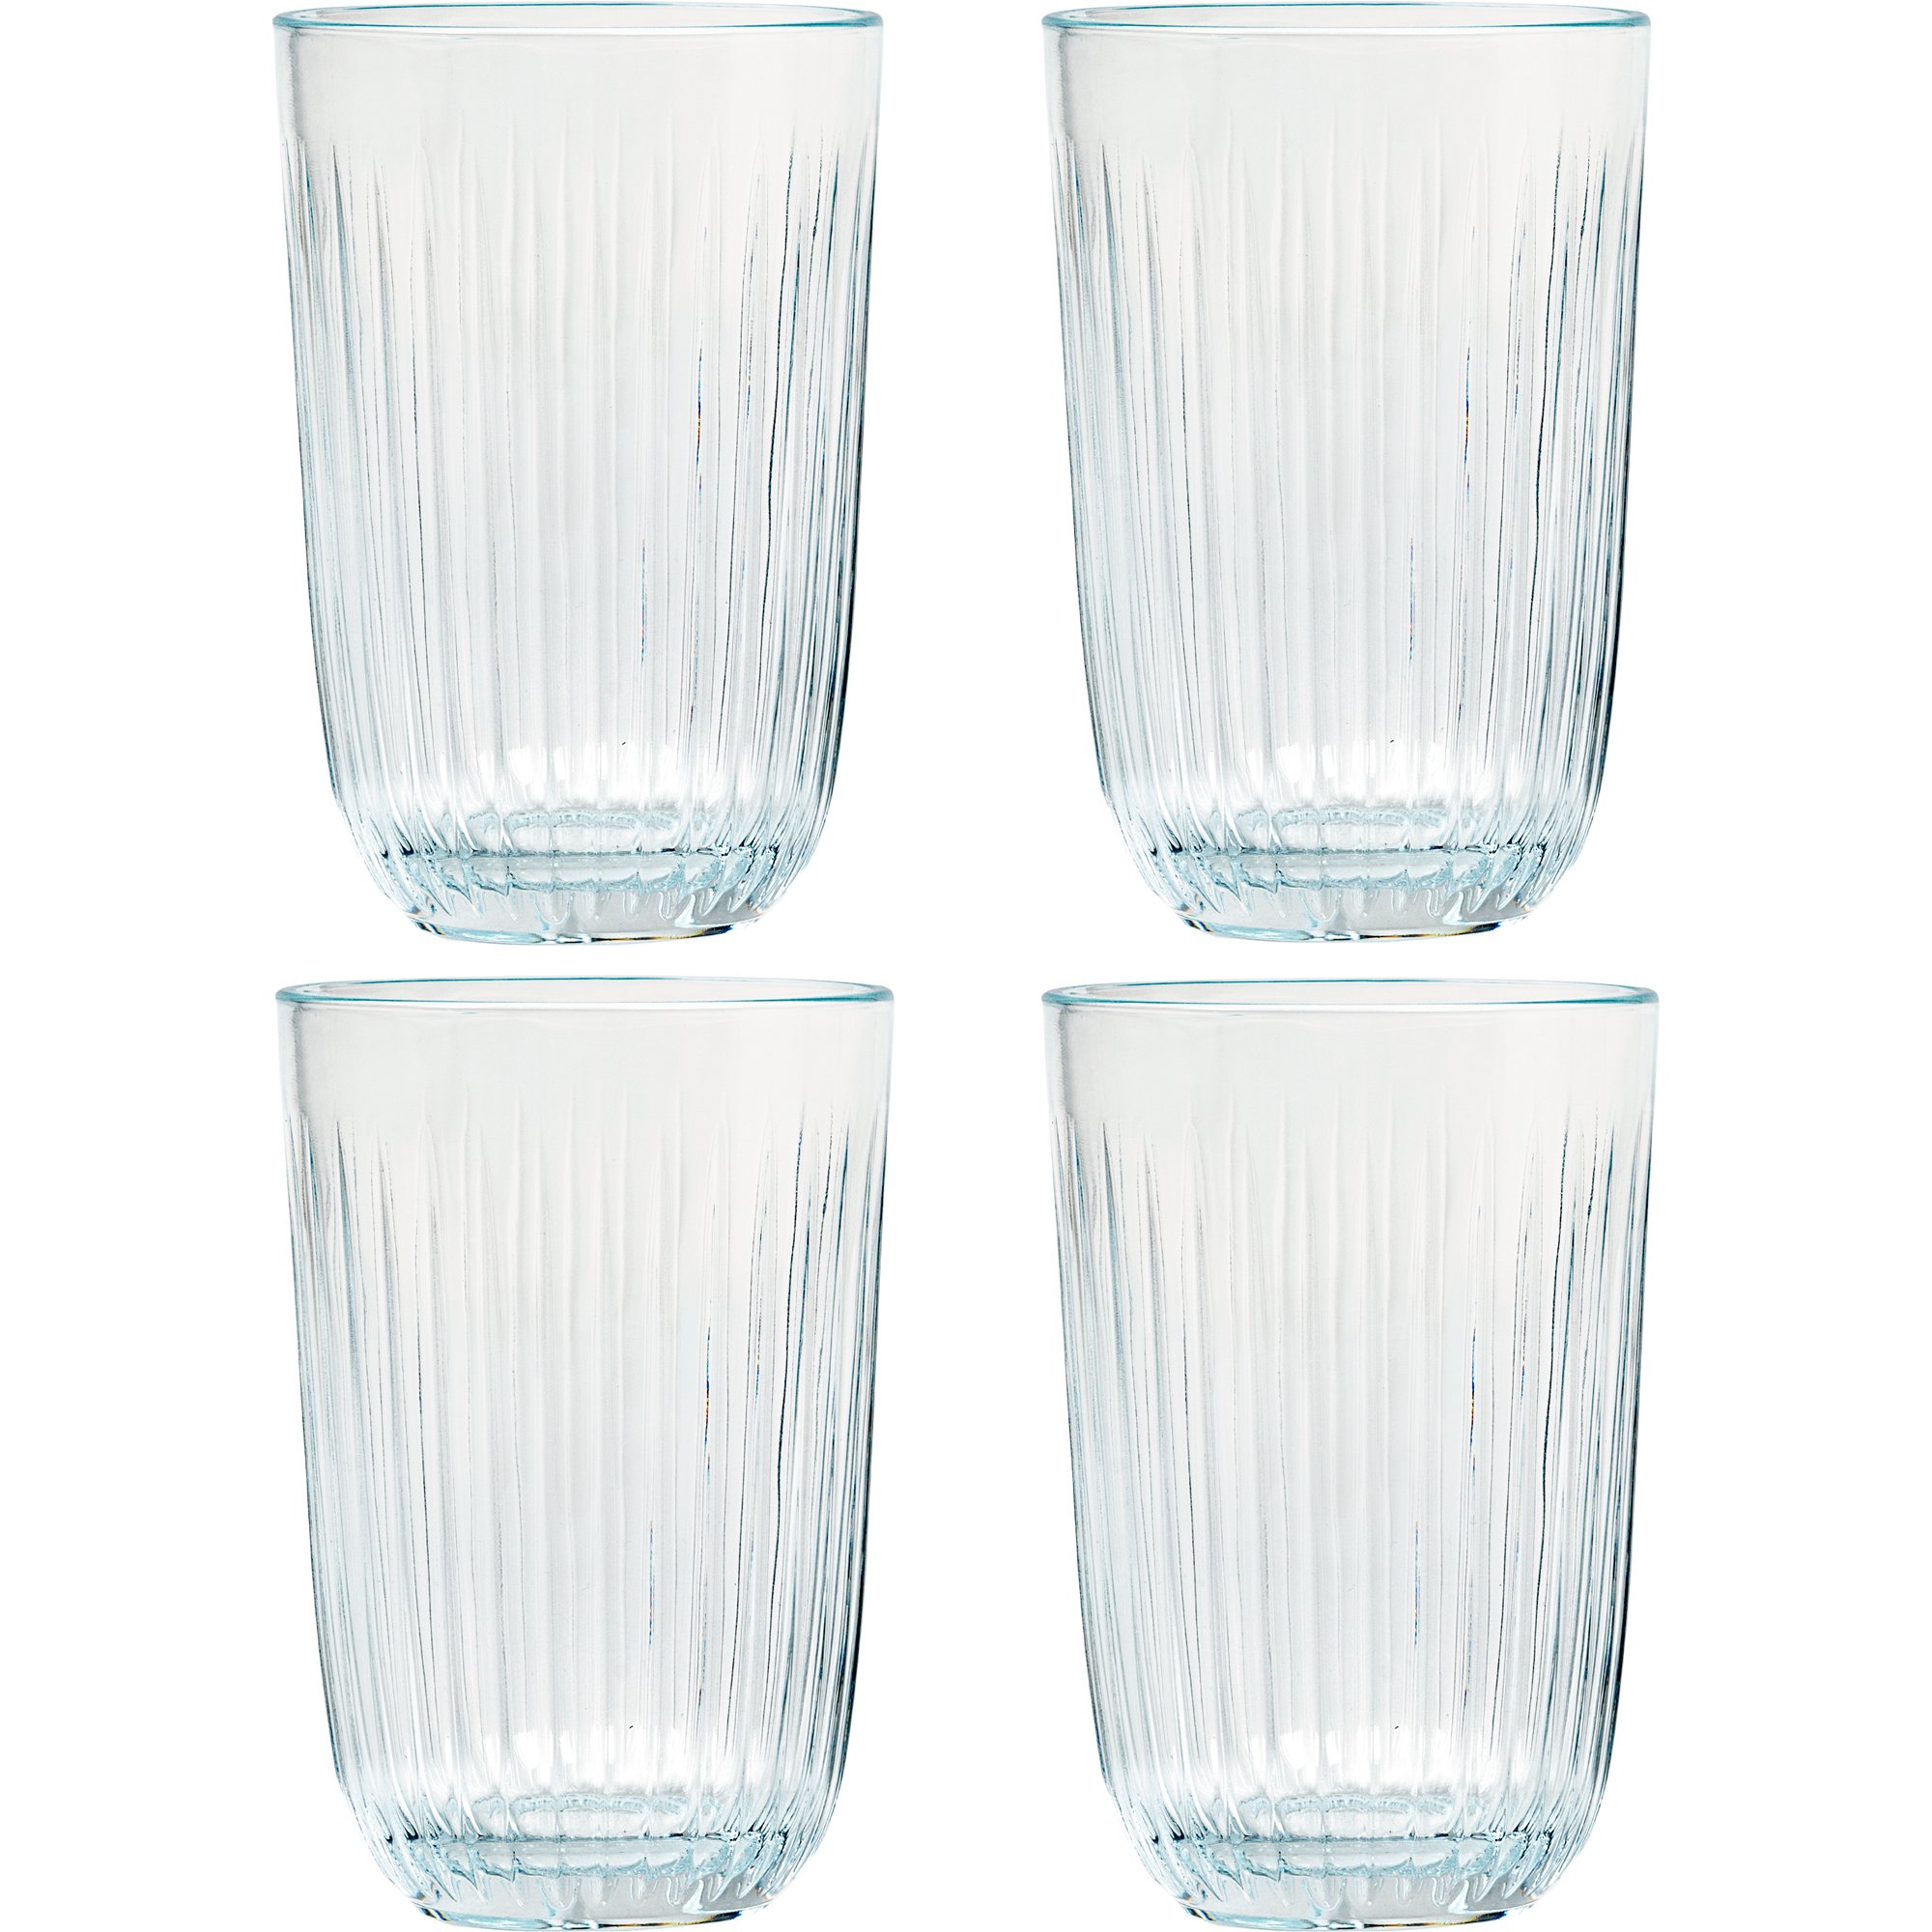 gentage Manager Udflugt Hammershøi vandglas, 37 cl, Ø 8 cm, 4 stk, klar fra Kähler